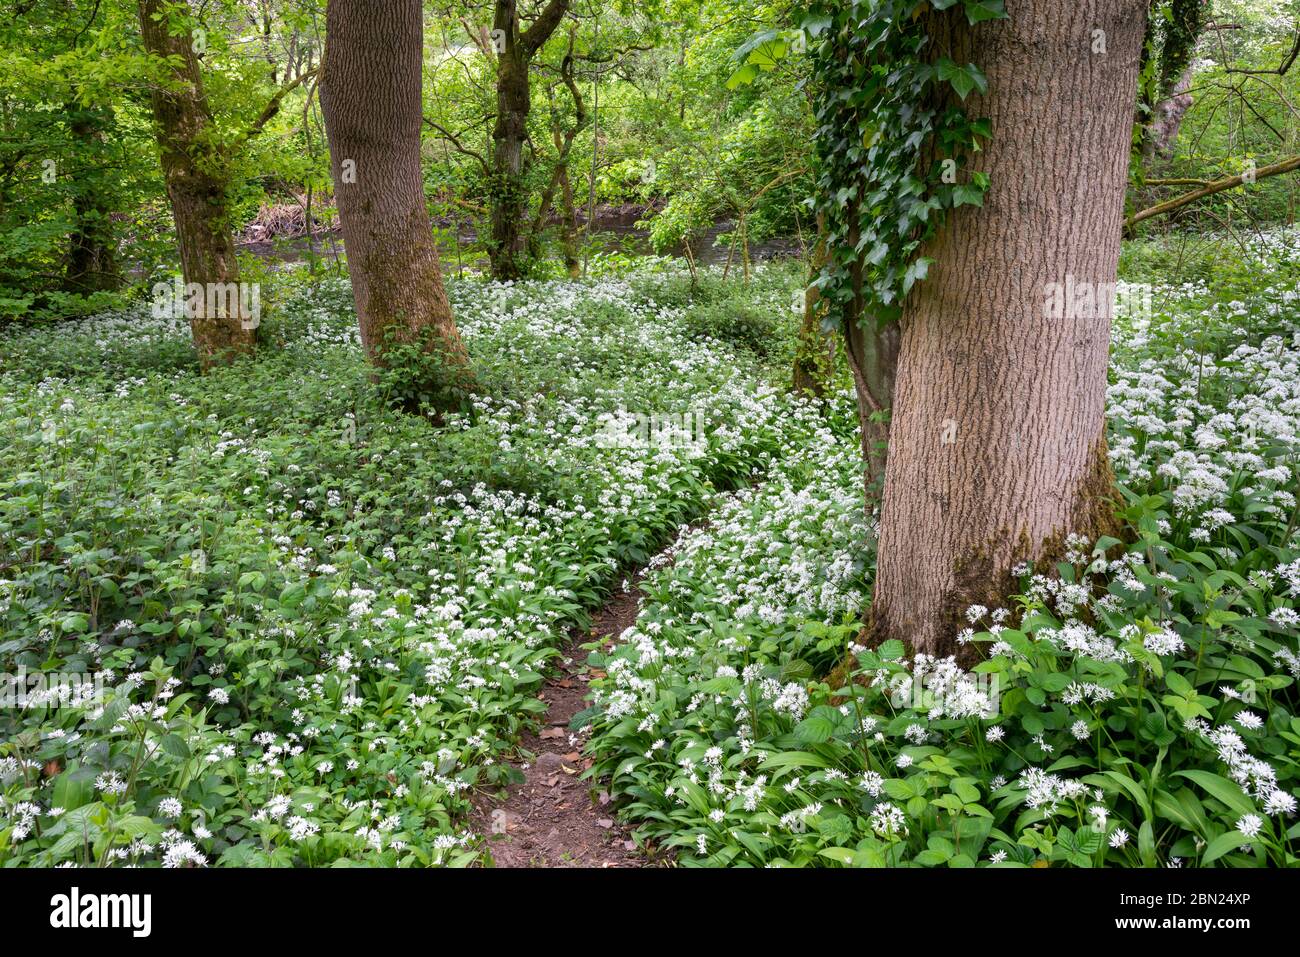 Ail sauvage (Ramsons, Allium ursinum) en fleurs dans le bois Tom, Charlesworth, Derbyshire. Banque D'Images